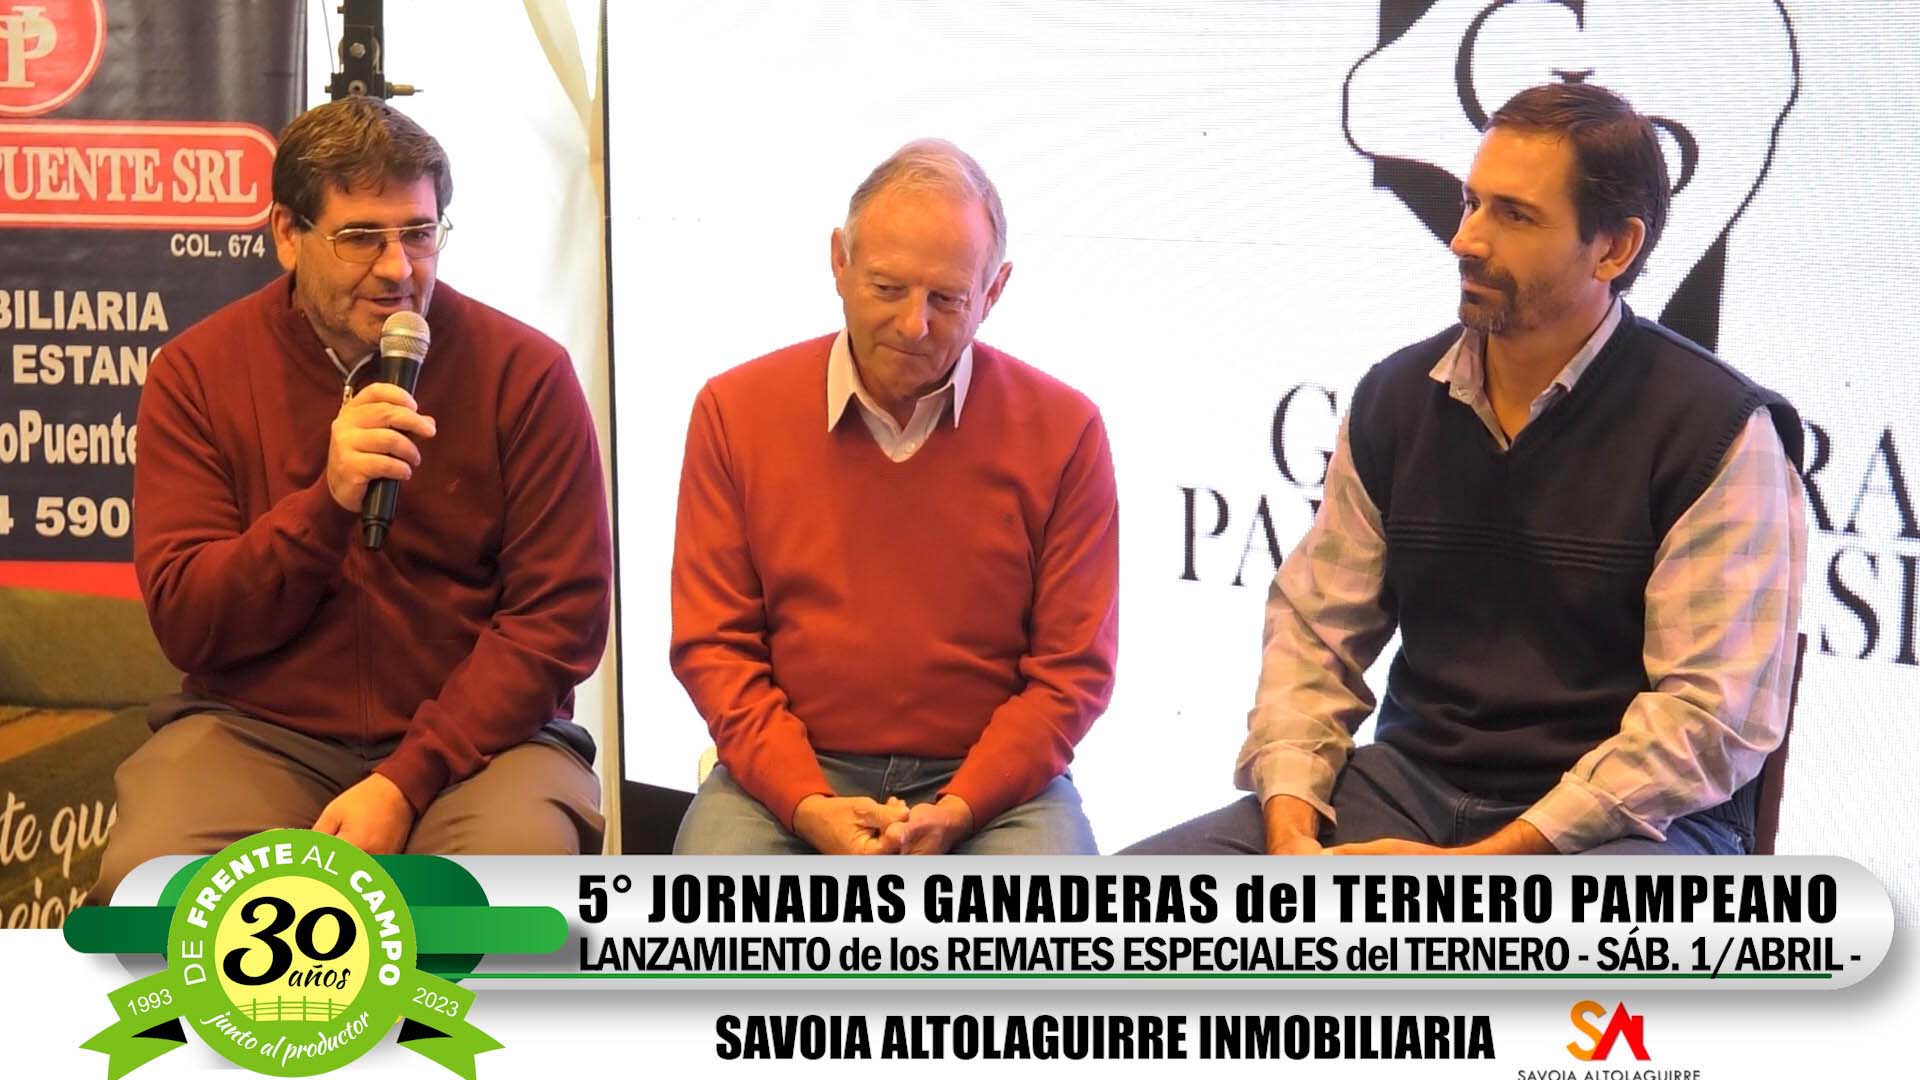 Lanzamiento de los Remates del Ternero: Carlos Flecha – Javier Manzano – Claudio Gentile